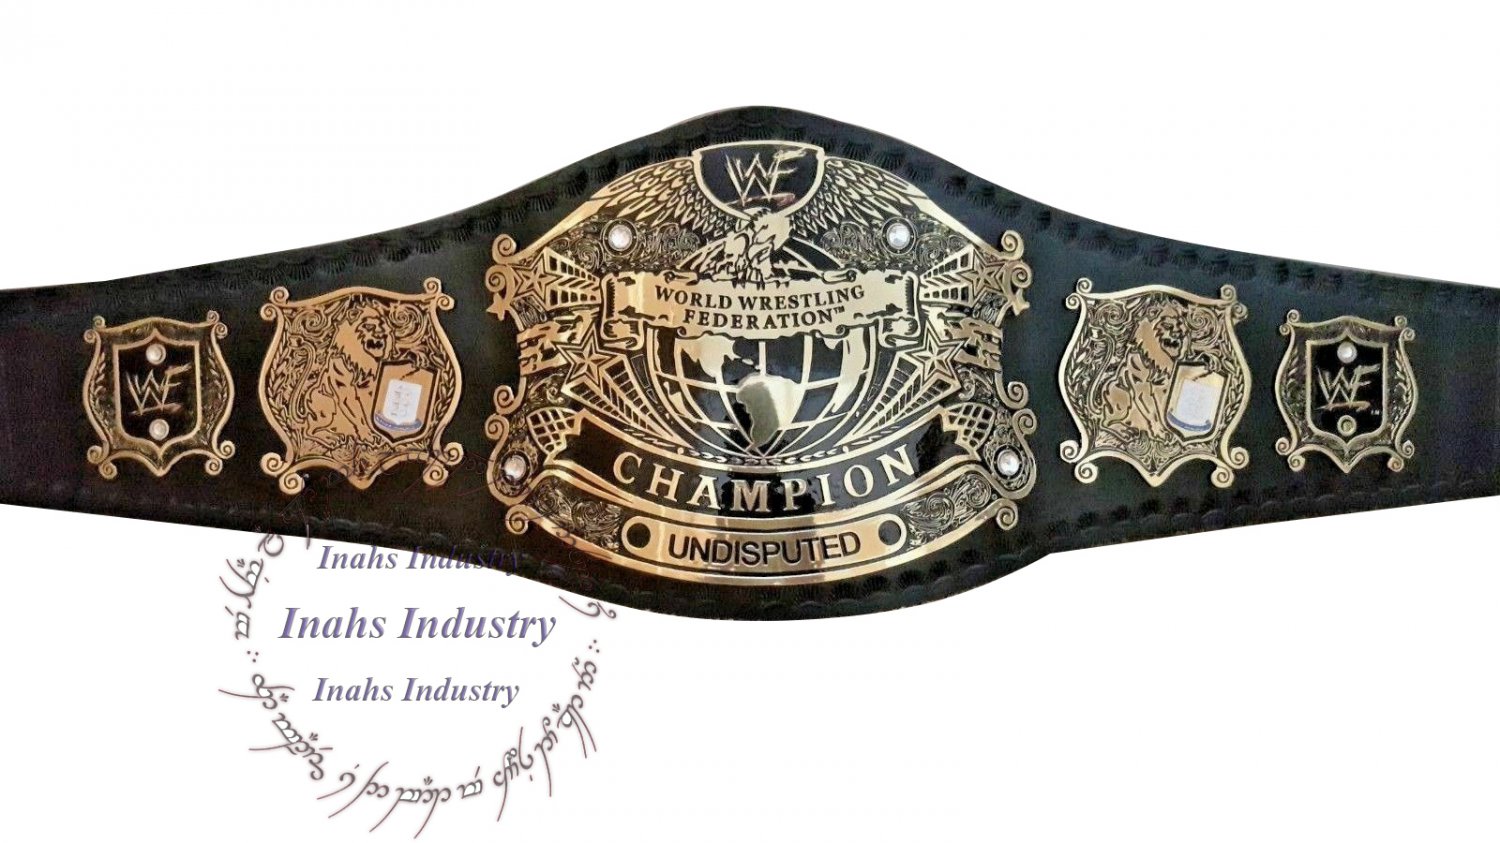 WWF World Wrestling Championship Undisputed Belt